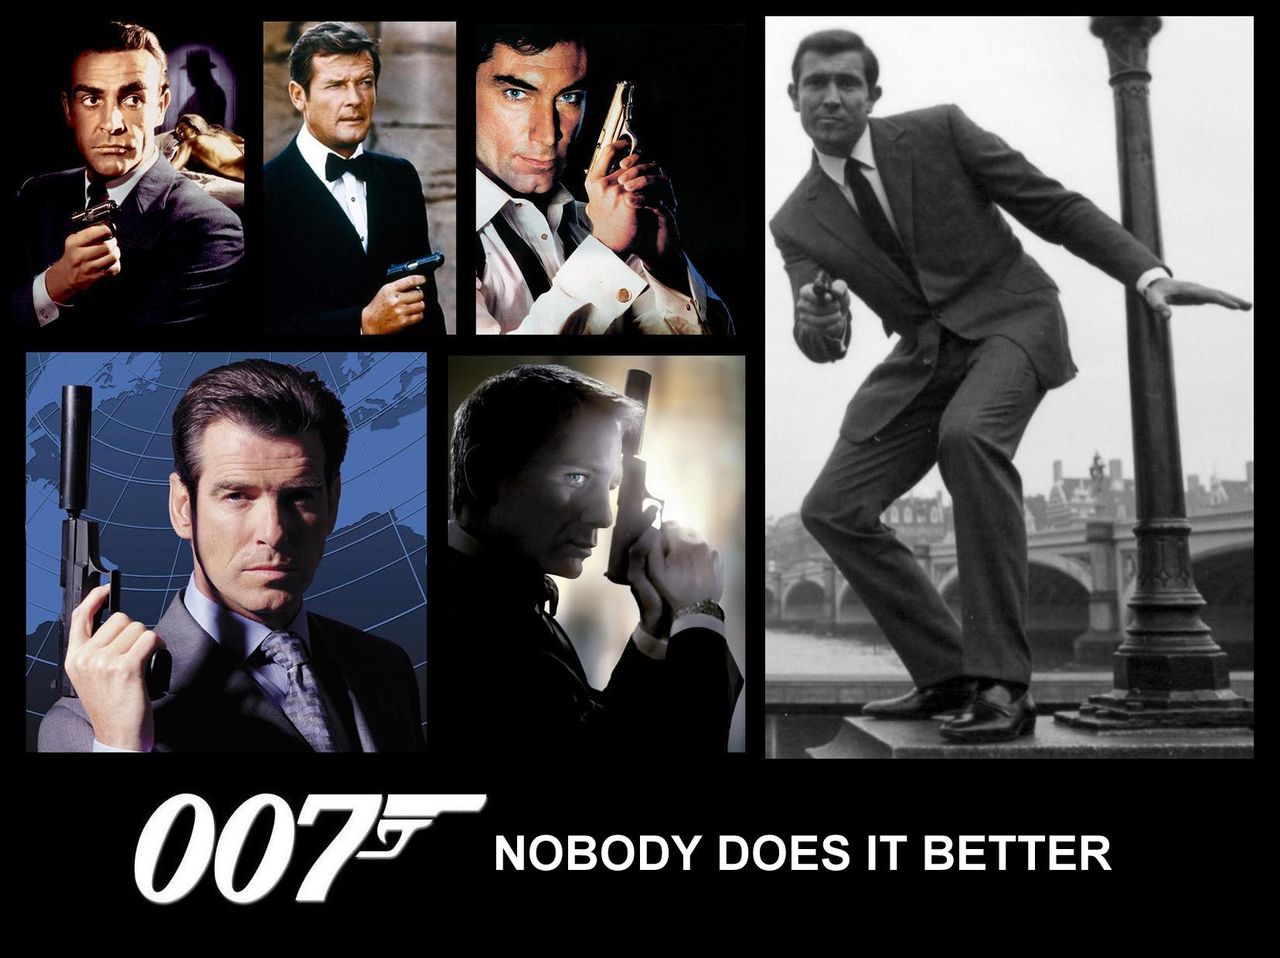 007シリーズで 次のジェームス ボンドになるのは誰かというのがブックメーカーで予想されています ワールドカジノナビ